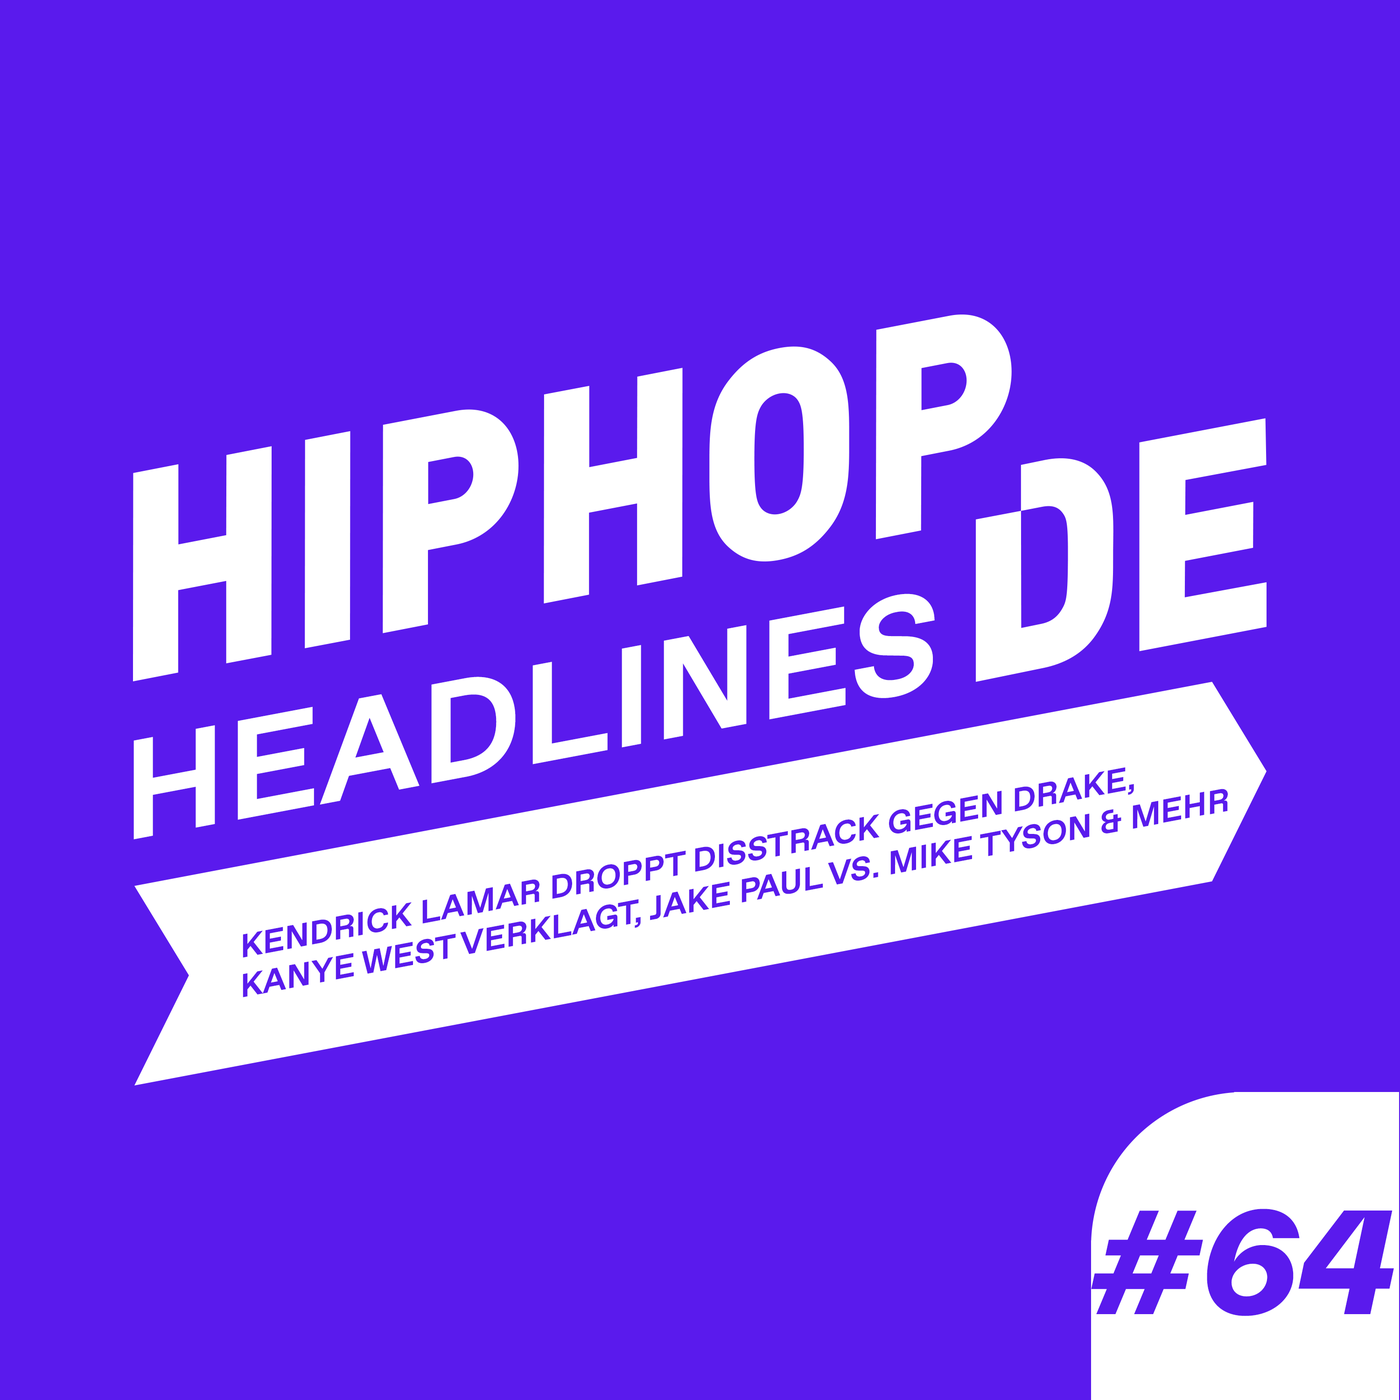 #64 Kendrick Lamar droppt Disstrack gegen Drake, Kanye West verklagt, Jake Paul vs. Mike Tyson & mehr